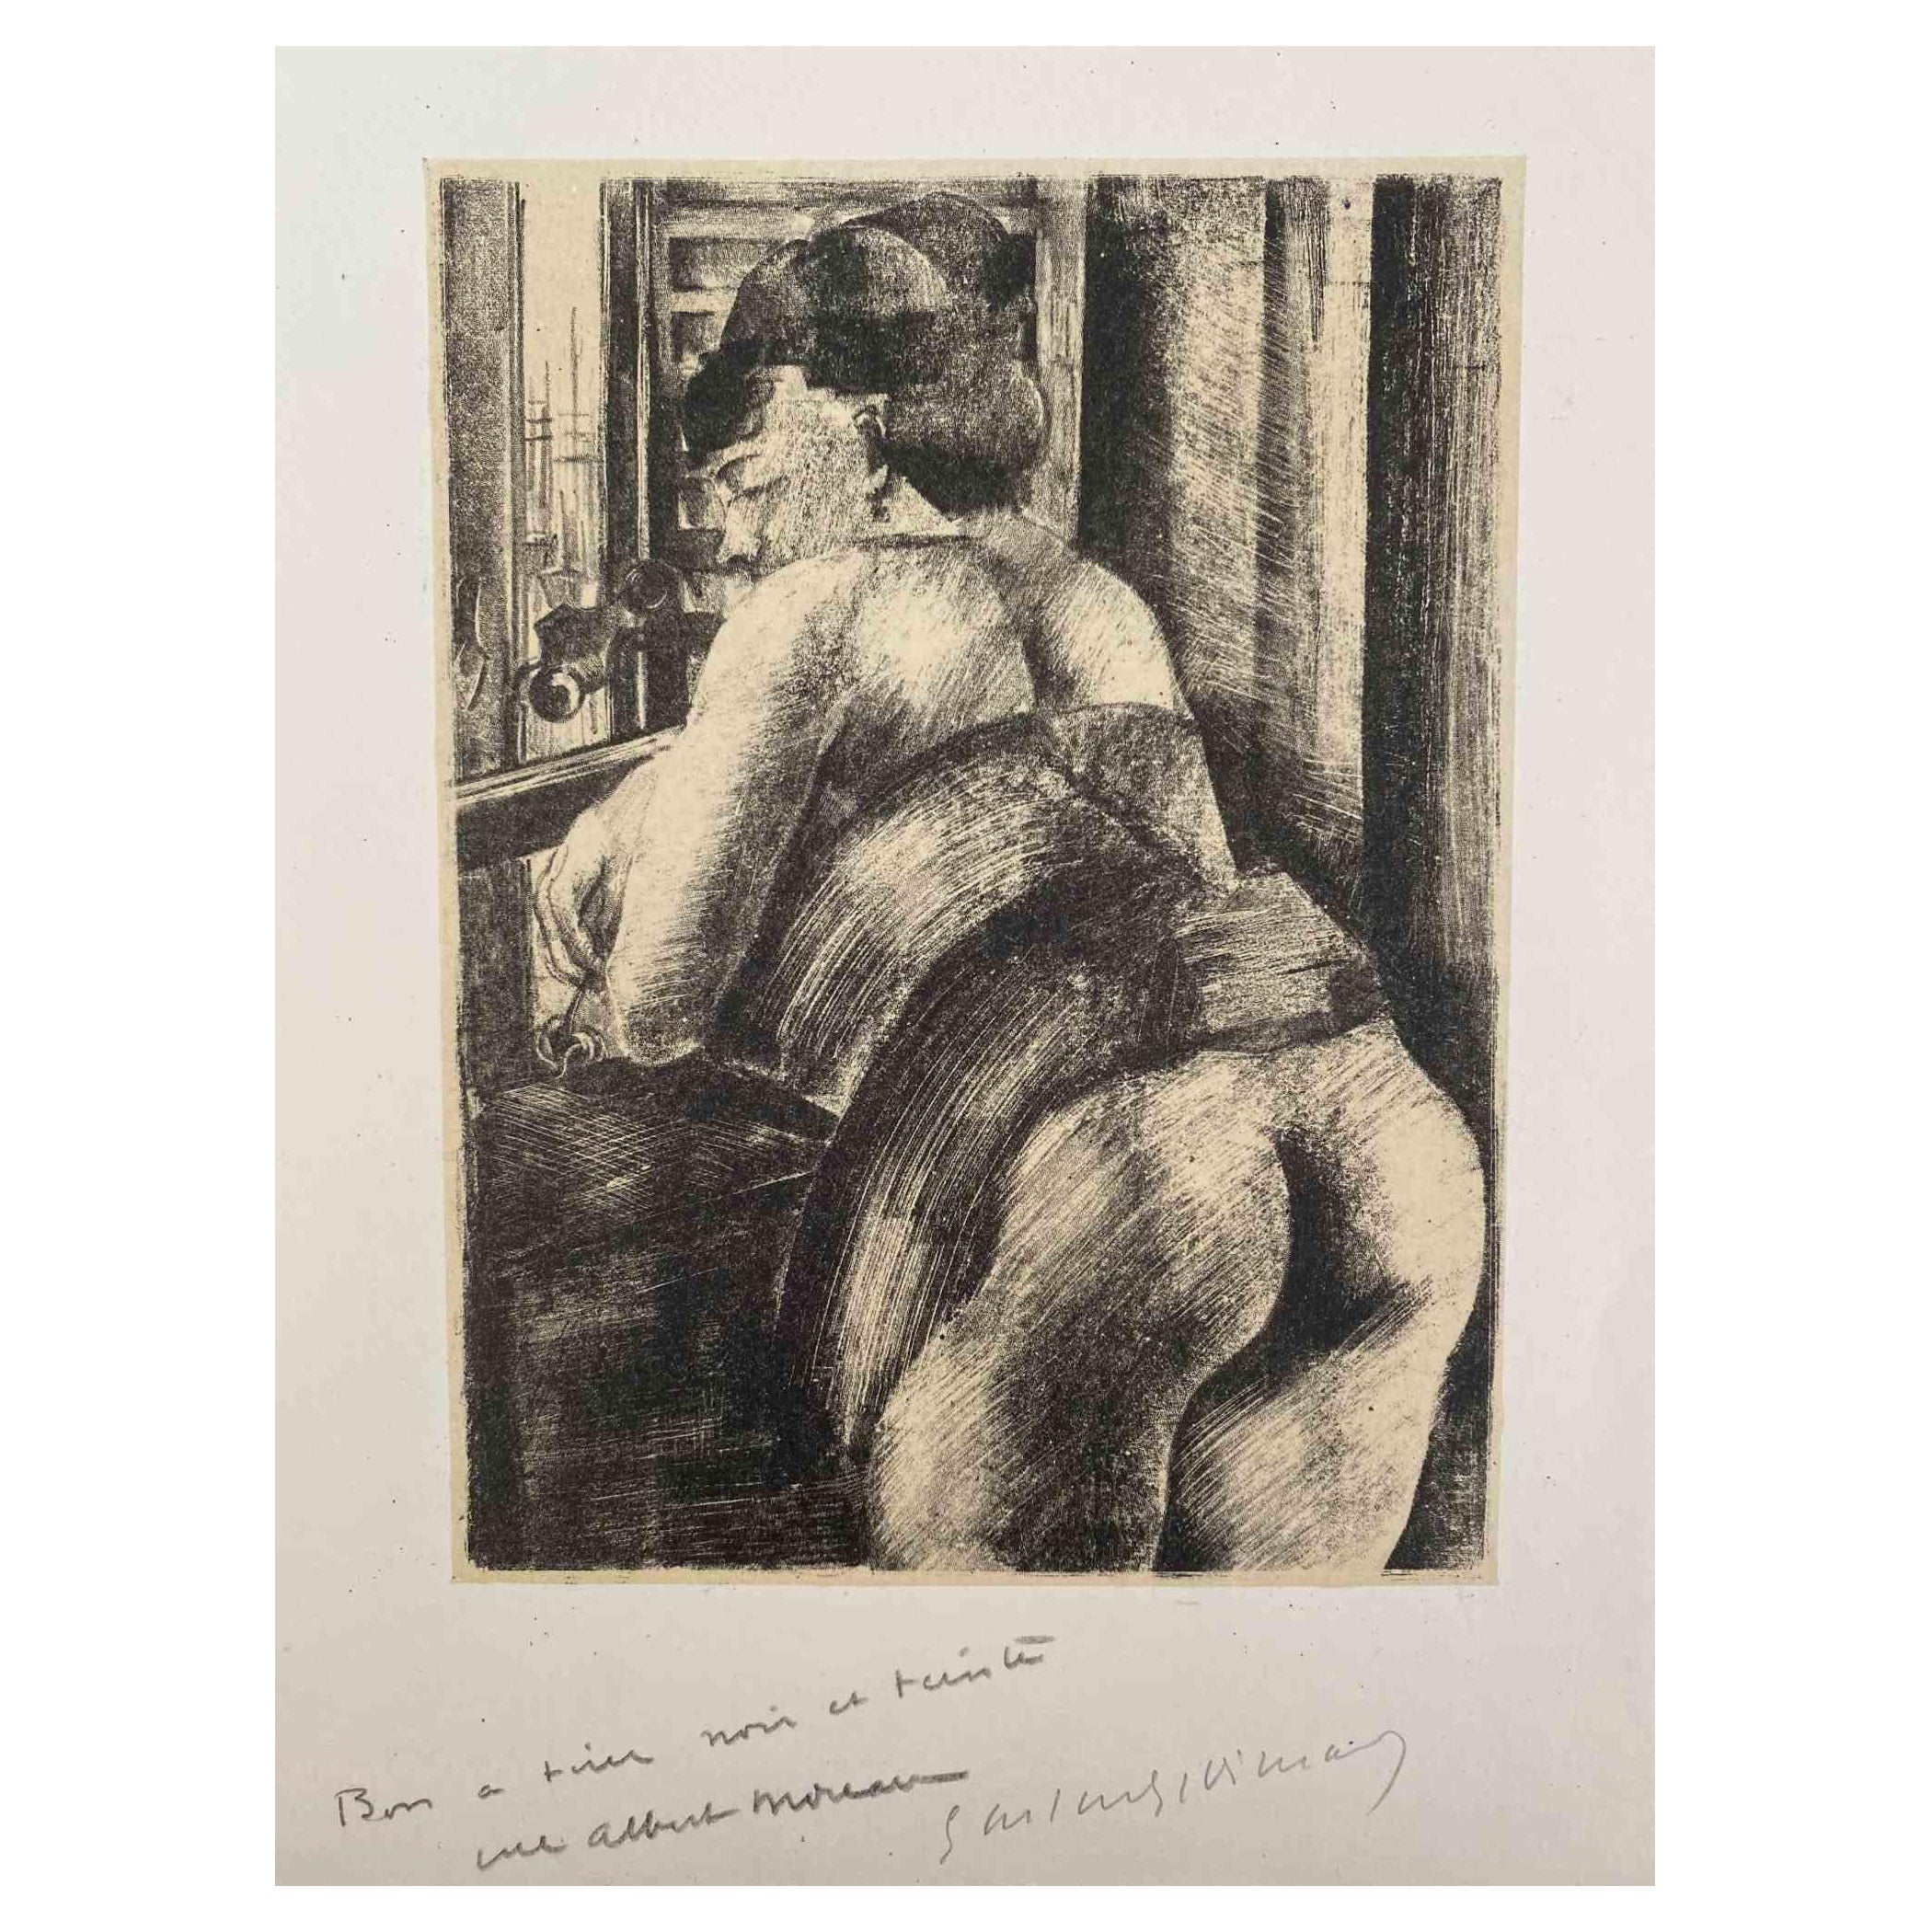 Femme nue est une Lithographie originale sur papier ivoire réalisée par Luc Albert Moreau.

L'œuvre d'art est en bon état.

Signé à la main en bas. 

Luc-Albert Moreau (1882-1948) est un peintre, graveur, lithographe et illustrateur français, proche